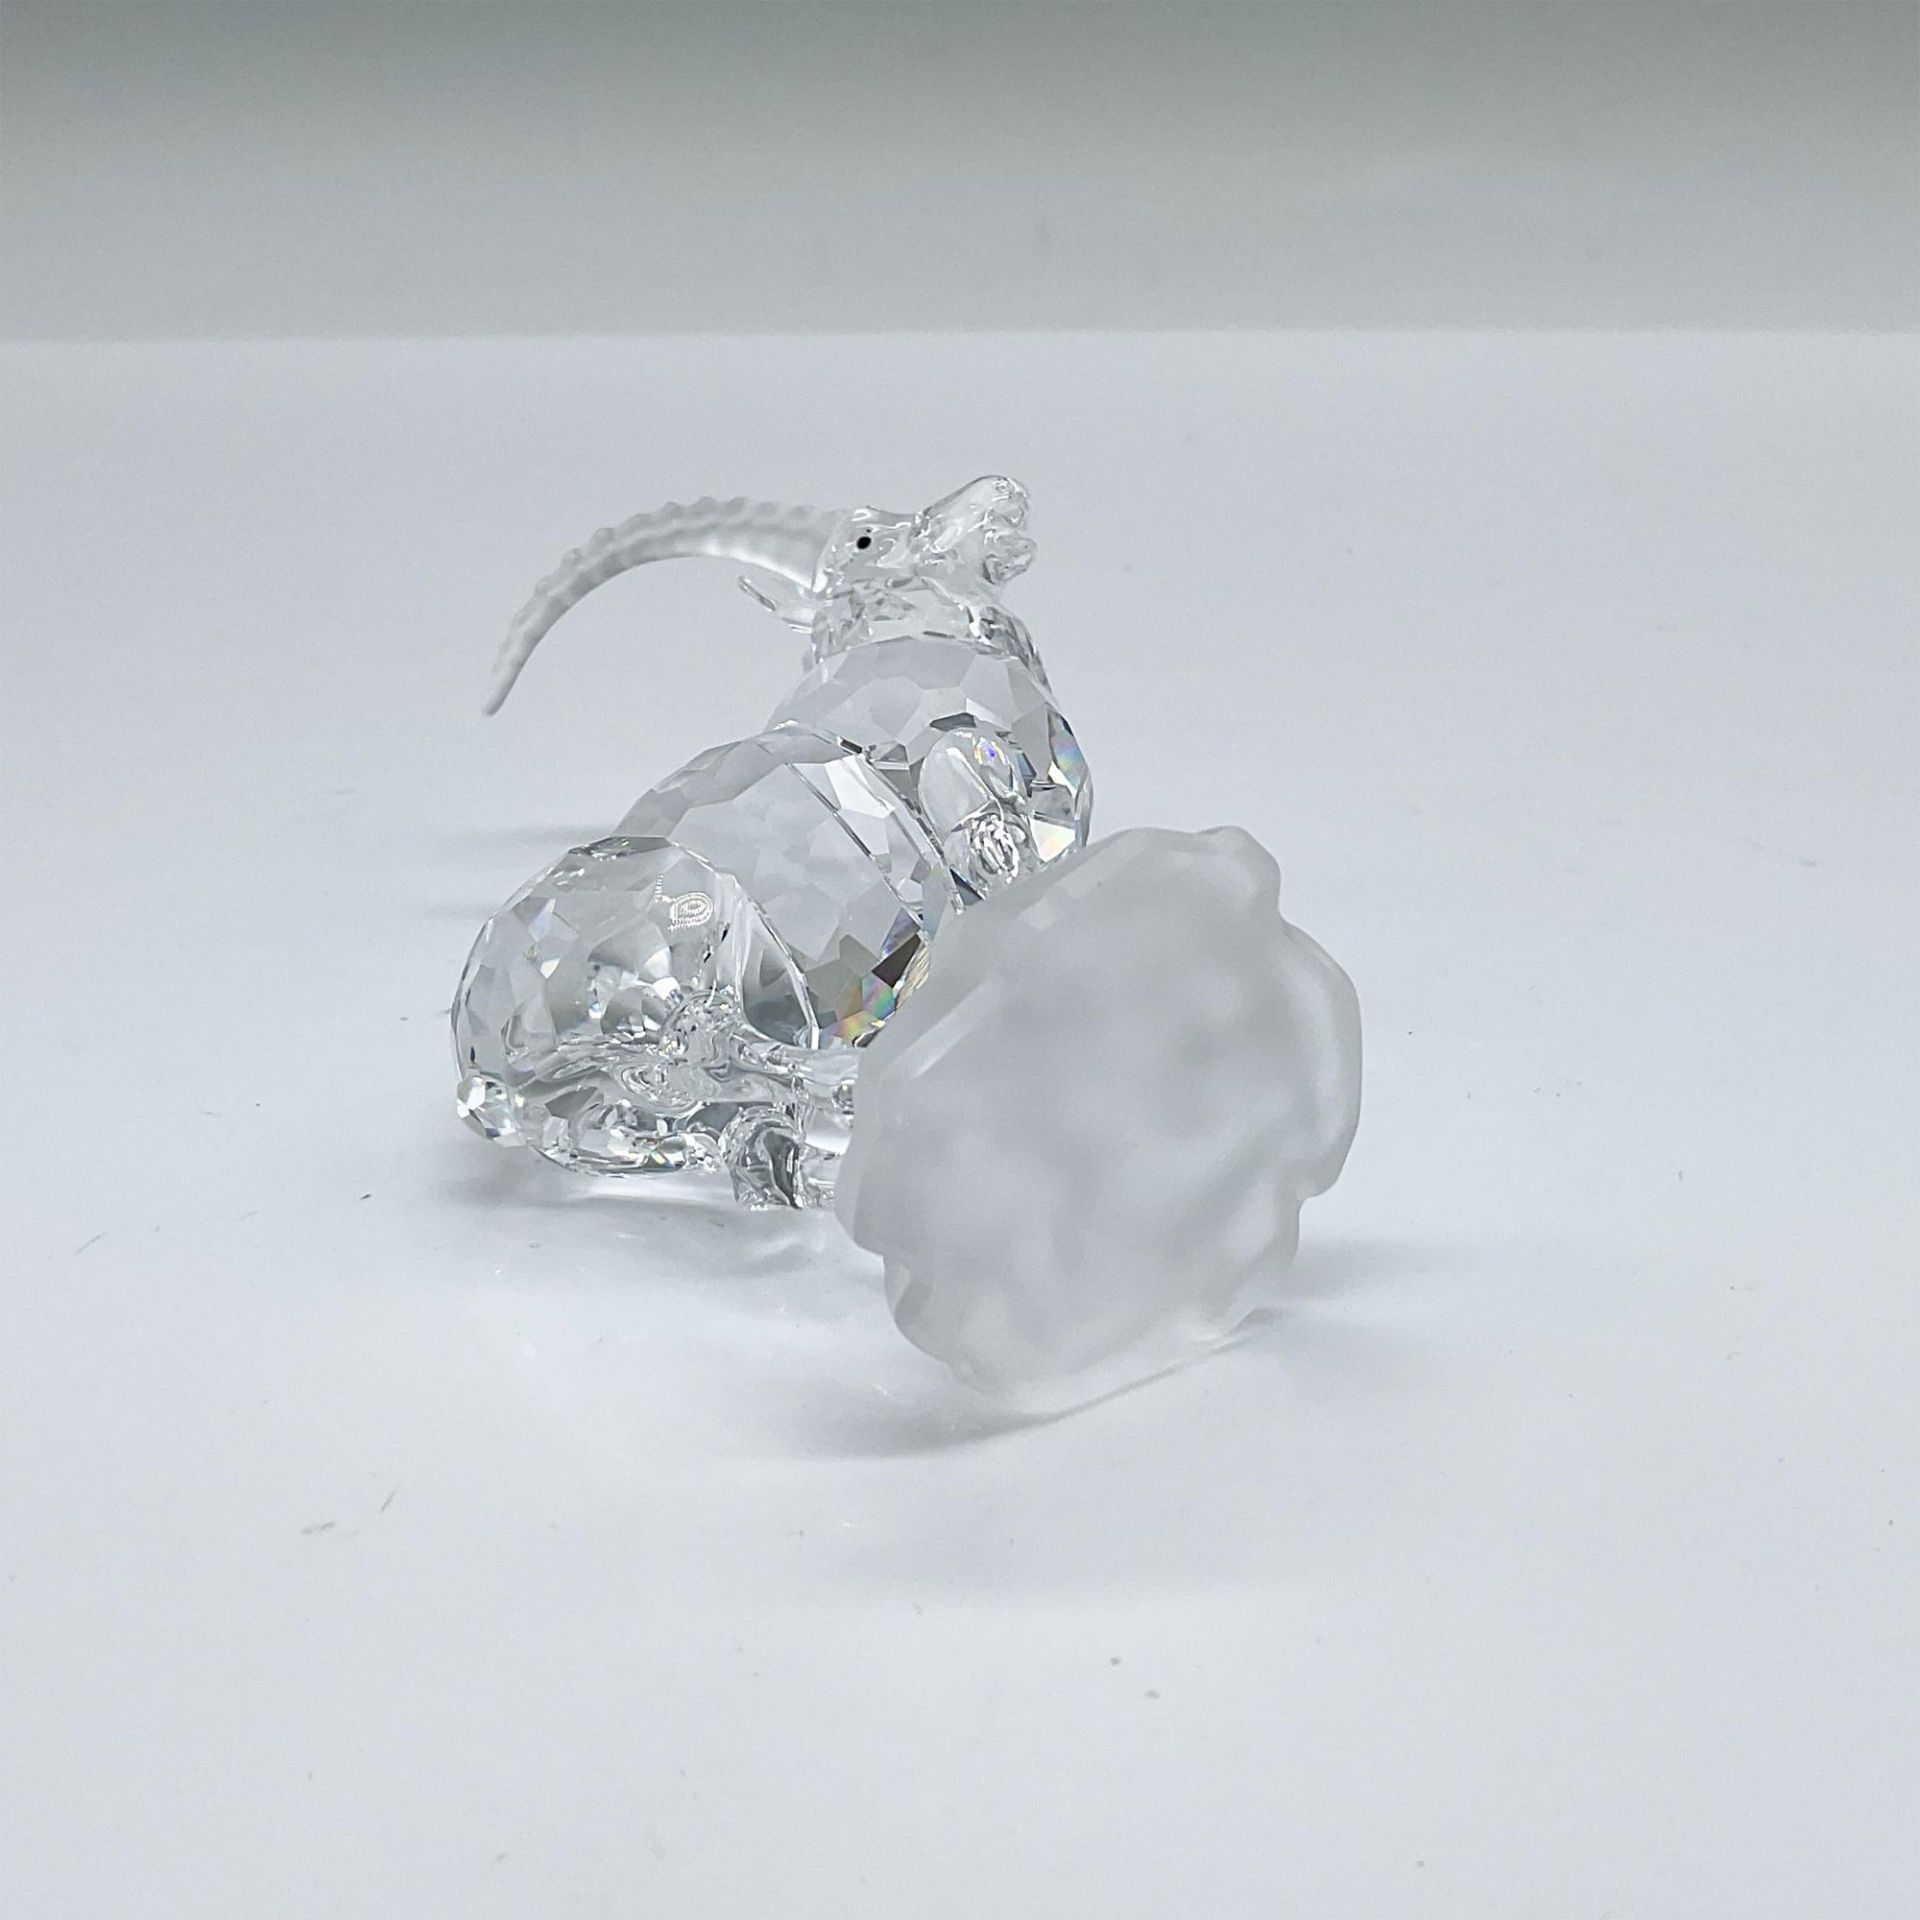 Swarovski Crystal Figurine, Ibex - Image 4 of 4